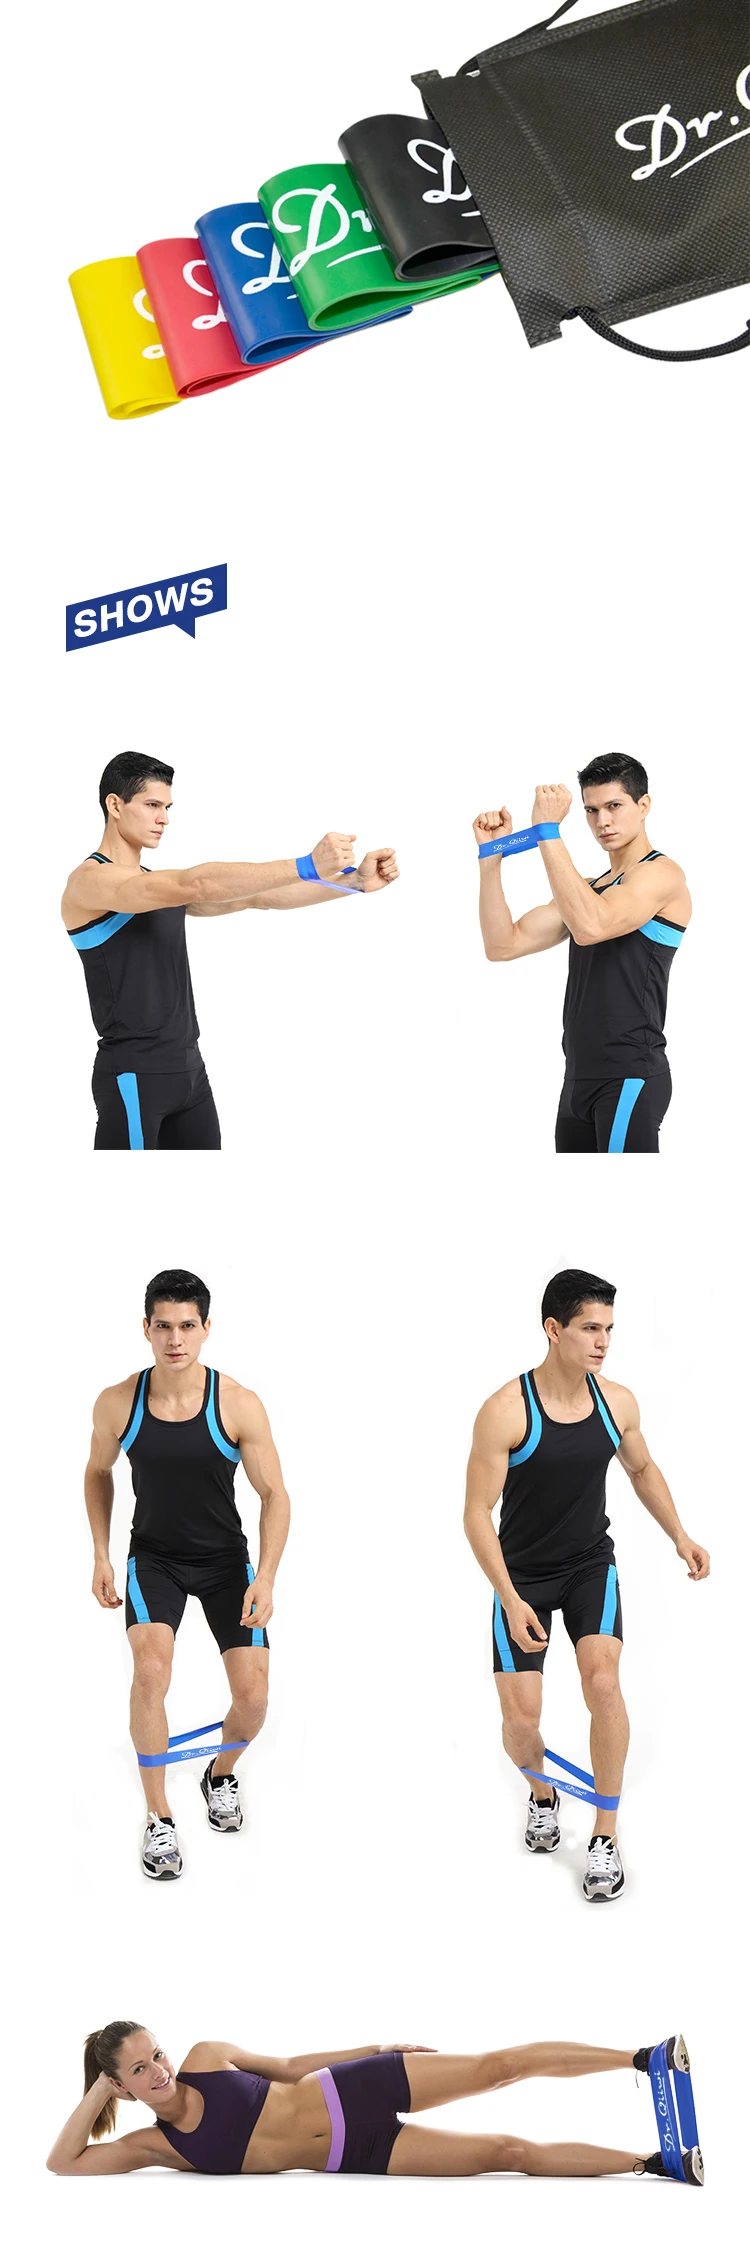 Dr. Qiiwi эластичное сопротивление наборы лент резинки фитнес оборудование растягивание резиновая петля для йоги тренировки упражнений